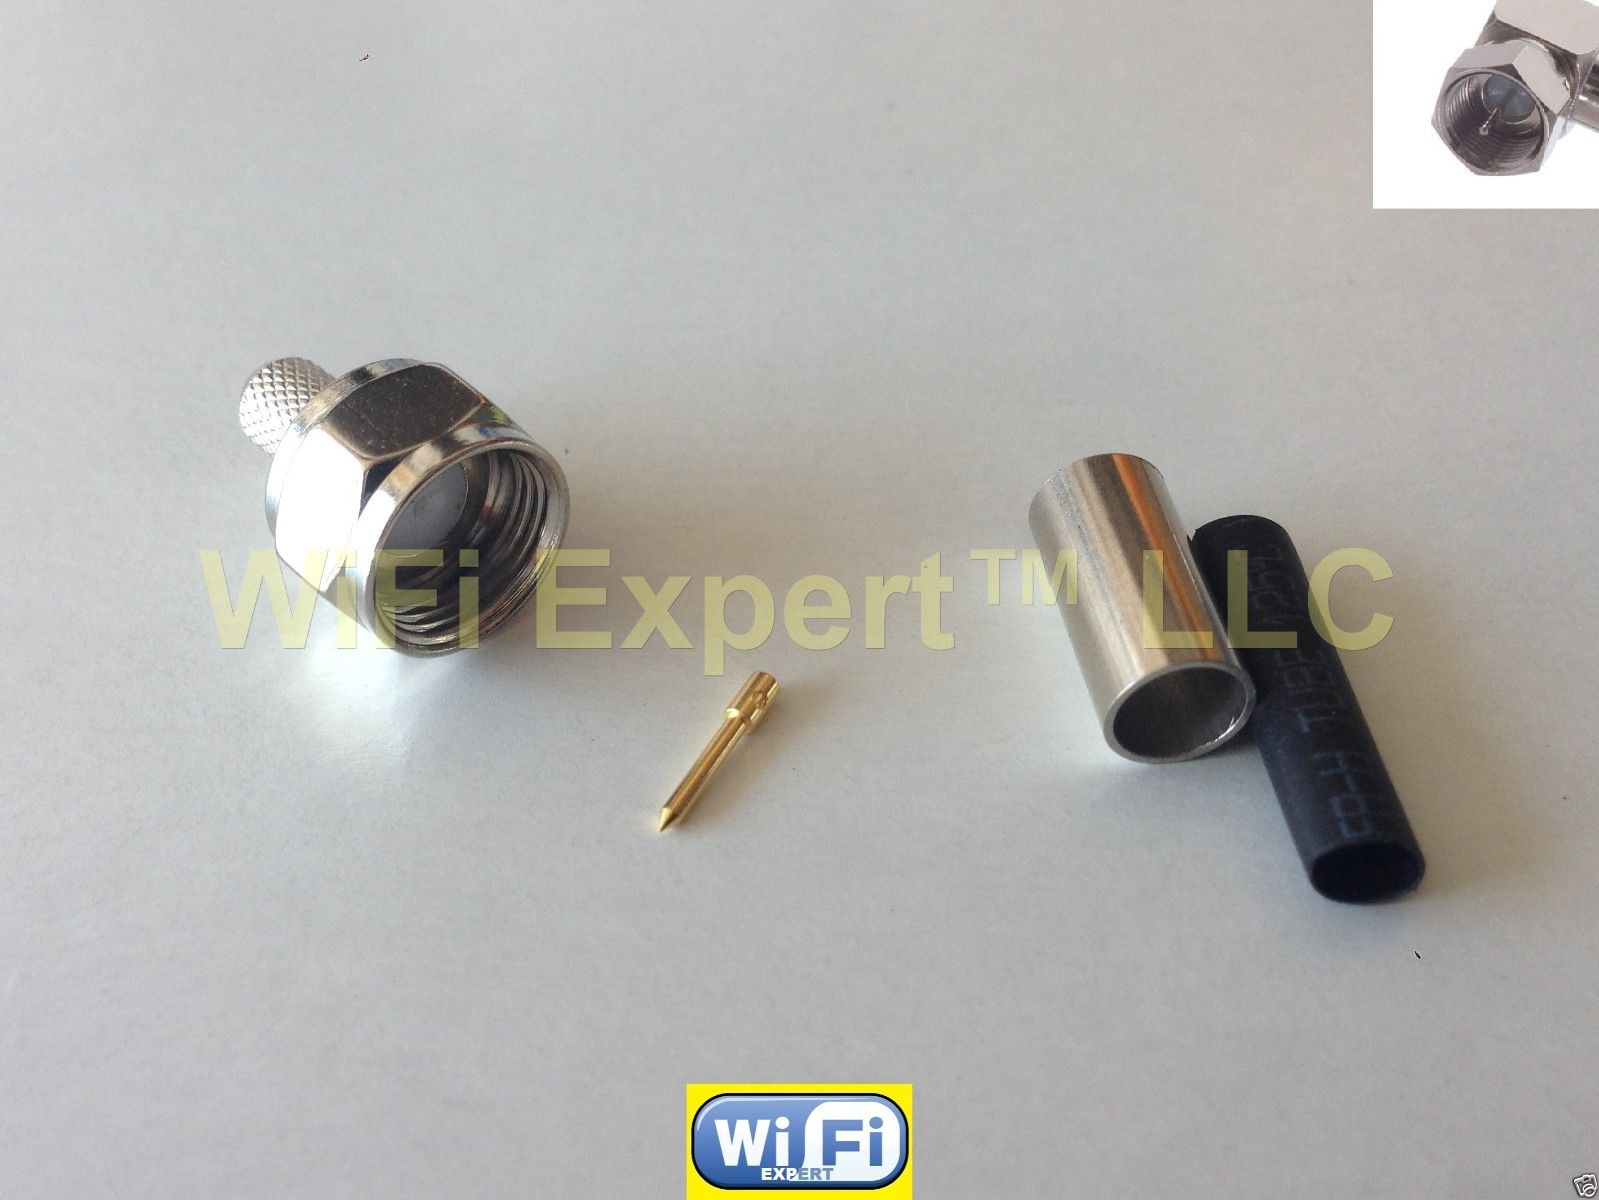 1 x RP-SMA Male plug right angle crimp RG58 RG142 RG400 LMR195 Coax Cable USA 